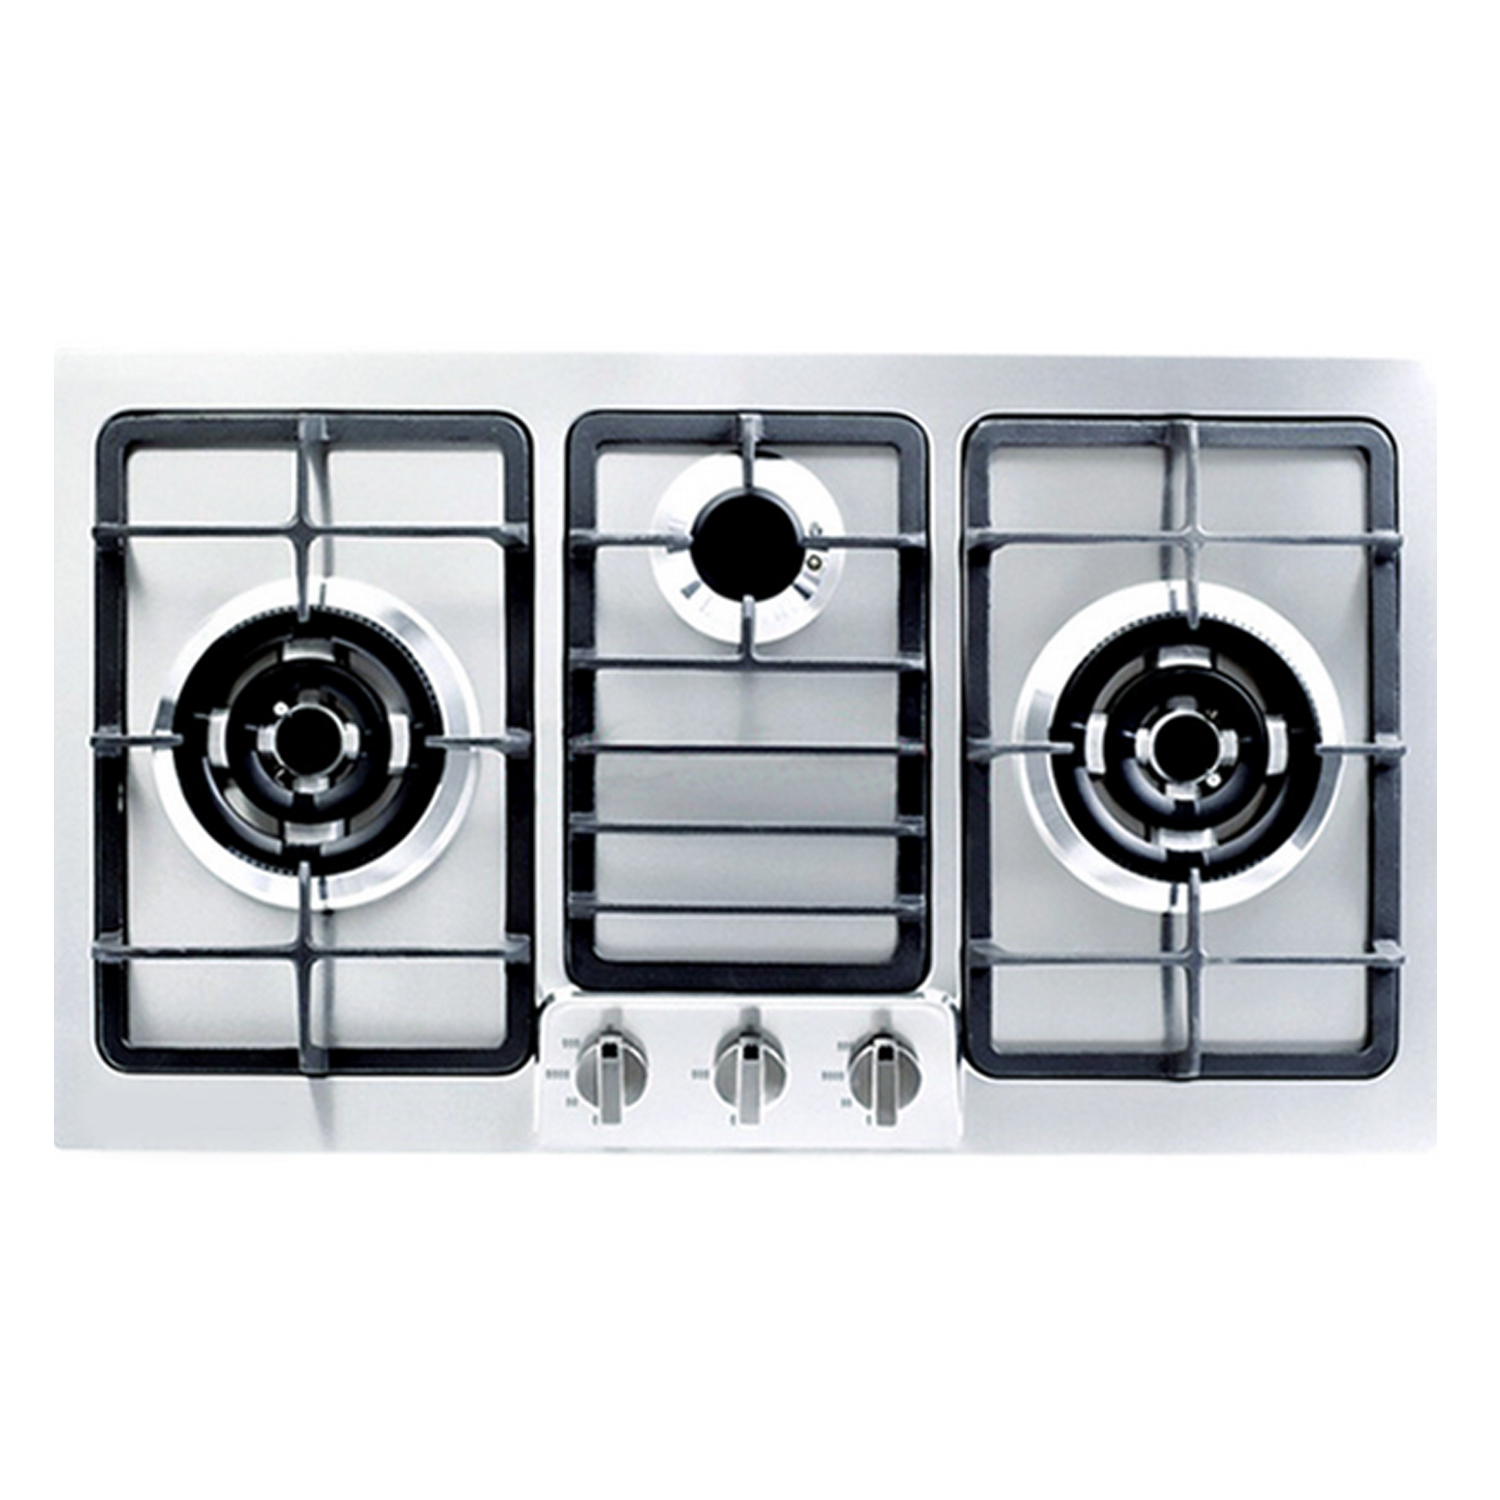 Behogar 4 stk universal metal drejekontakt kontrolknapper udskiftning tilbehør til køkken komfur gaskomfur ovn kogeplade